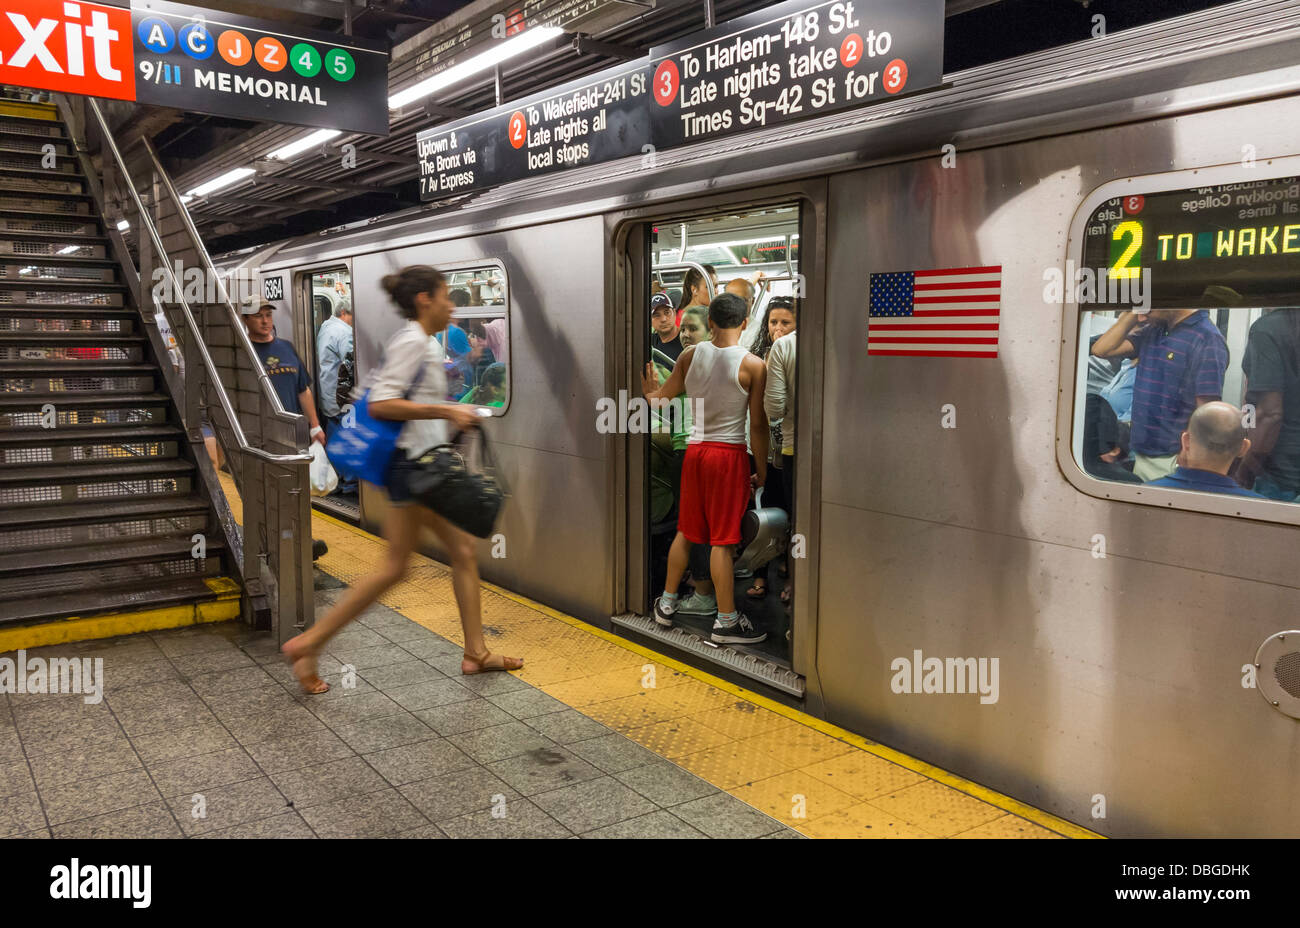 La plate-forme de la station de métro de New York, New York City Banque D'Images